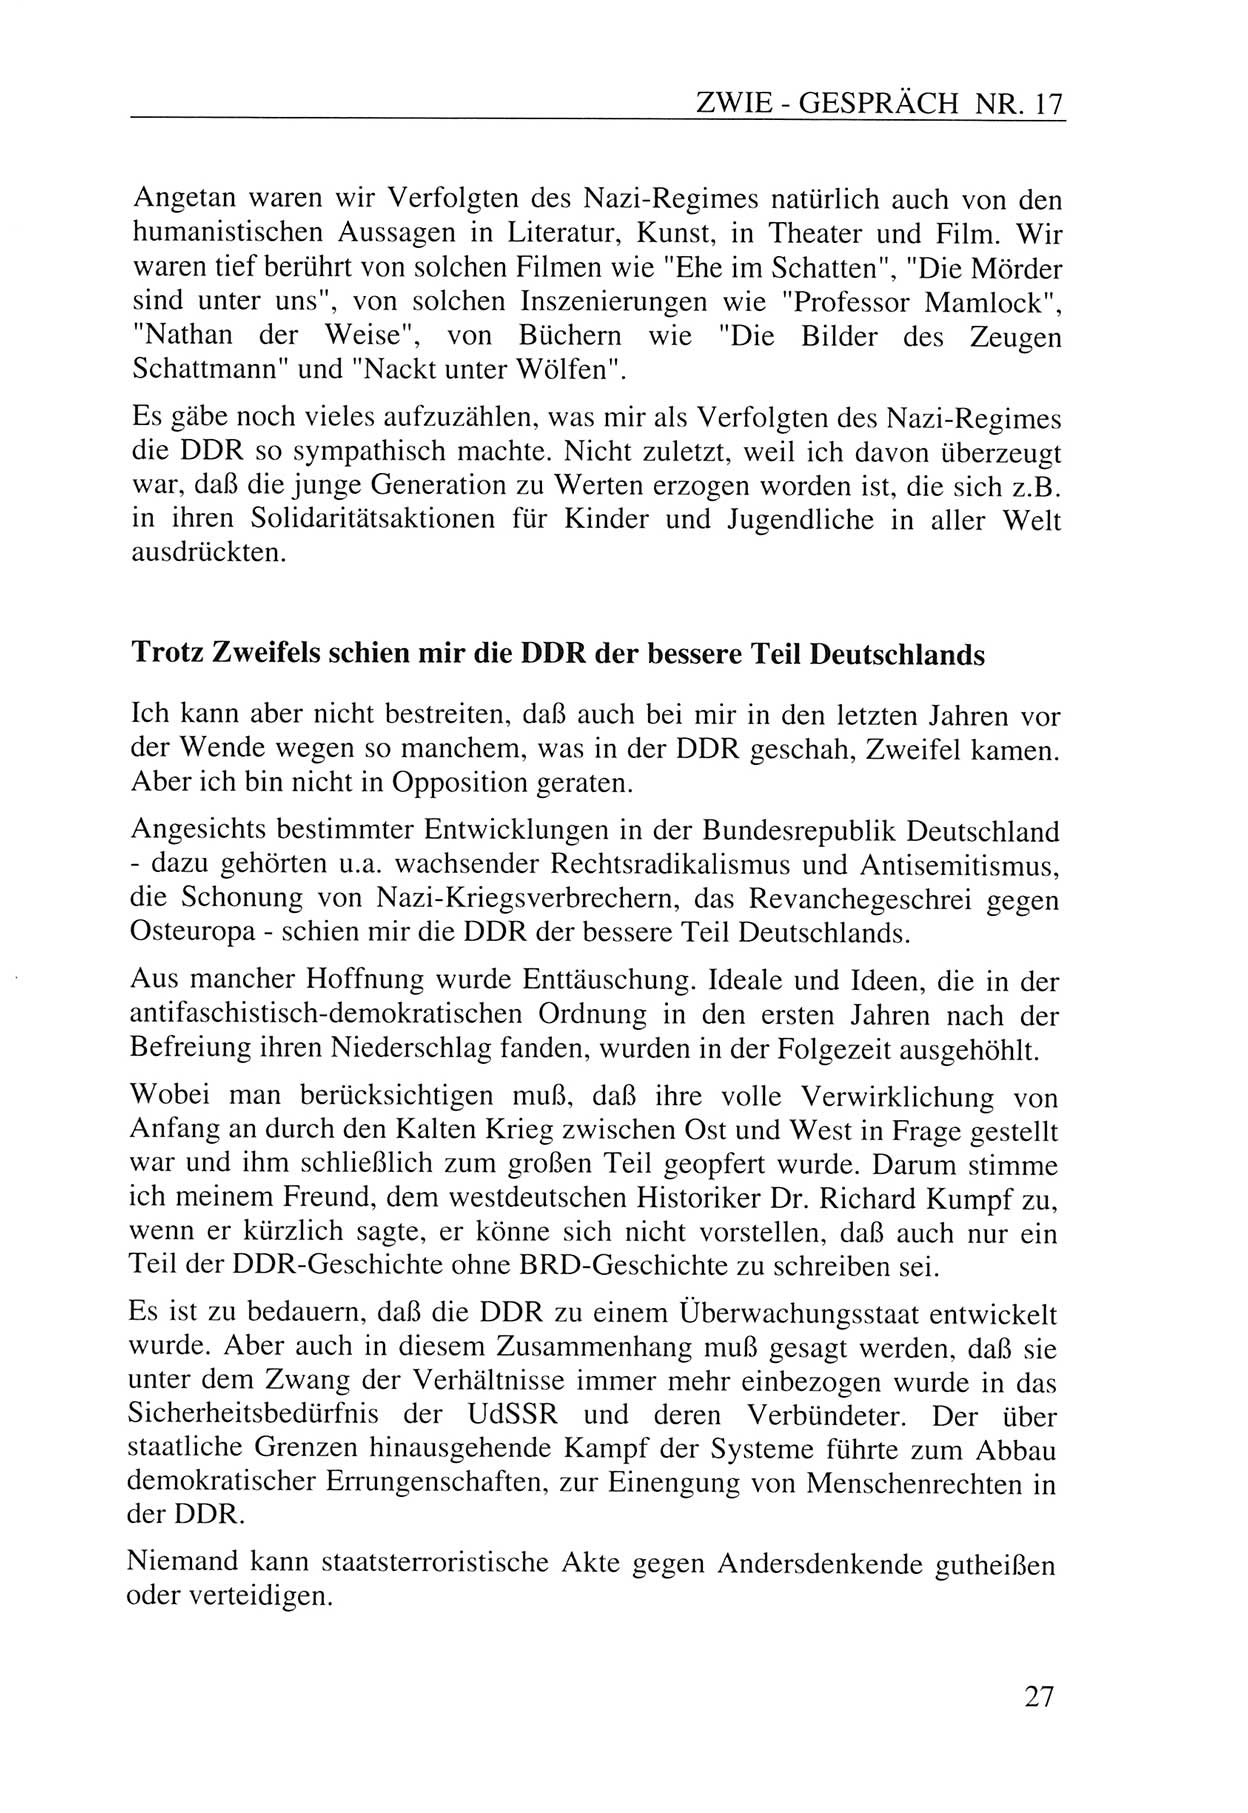 Zwie-Gespräch, Beiträge zur Aufarbeitung der Staatssicherheits-Vergangenheit [Deutsche Demokratische Republik (DDR)], Ausgabe Nr. 17, Berlin 1993, Seite 27 (Zwie-Gespr. Ausg. 17 1993, S. 27)